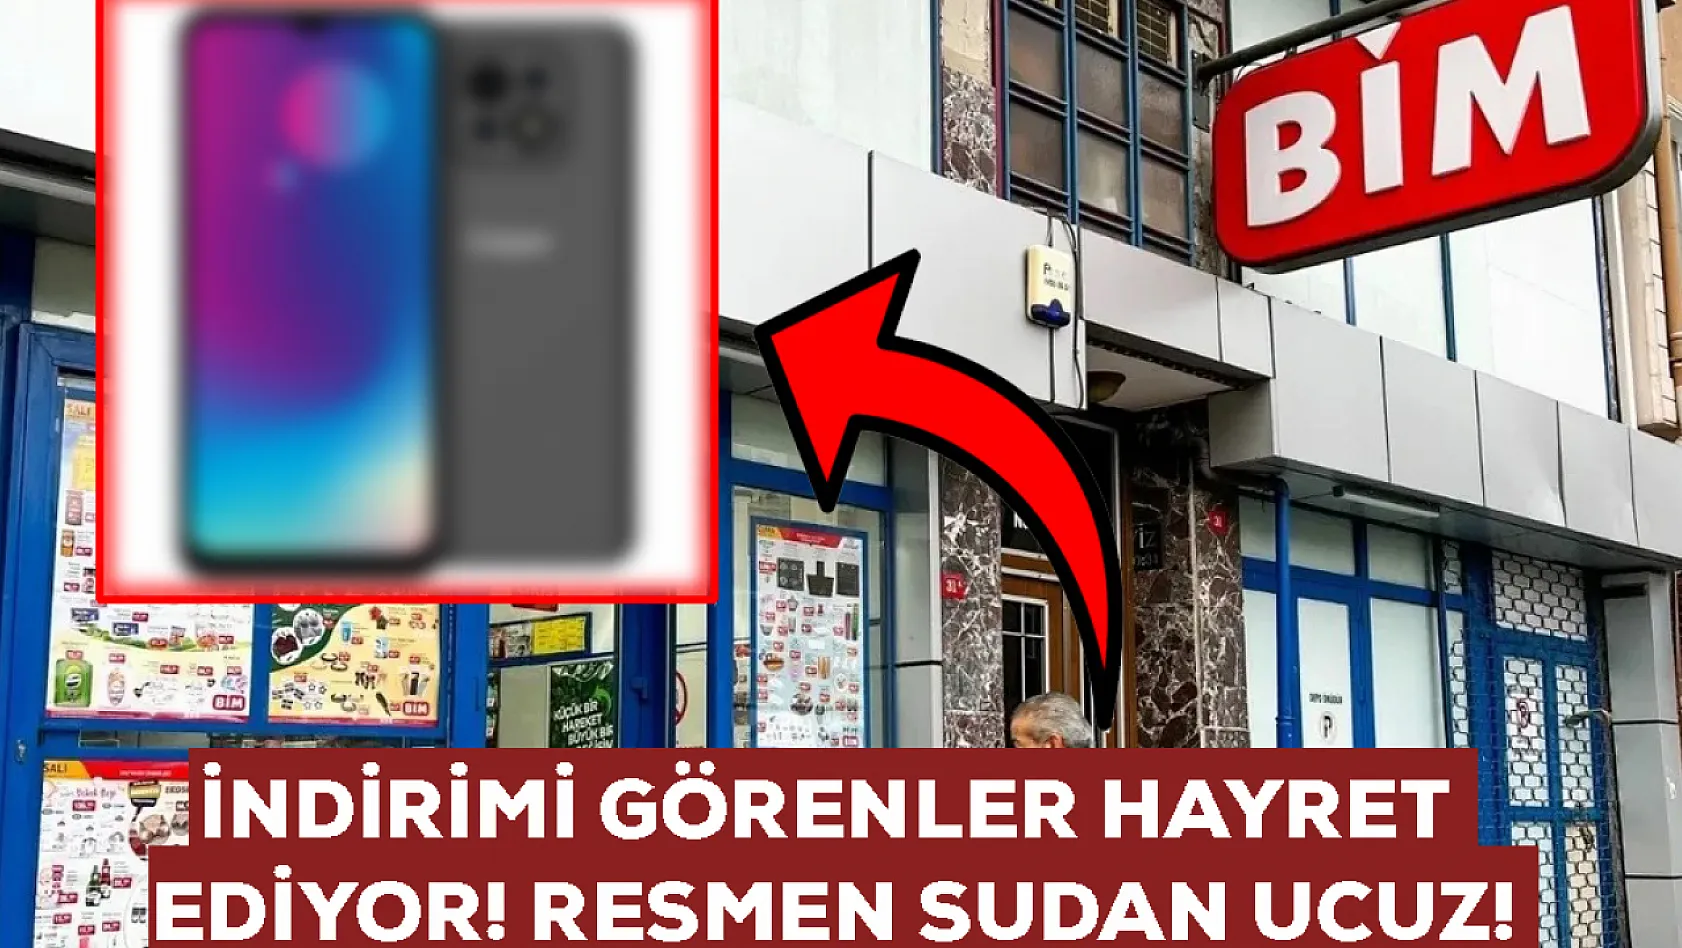 Elazığ'da BİM marketlerinin önünde sıra olacak: Sudan ucuz telefon geliyor! Resmen kuyruk oluşacak 